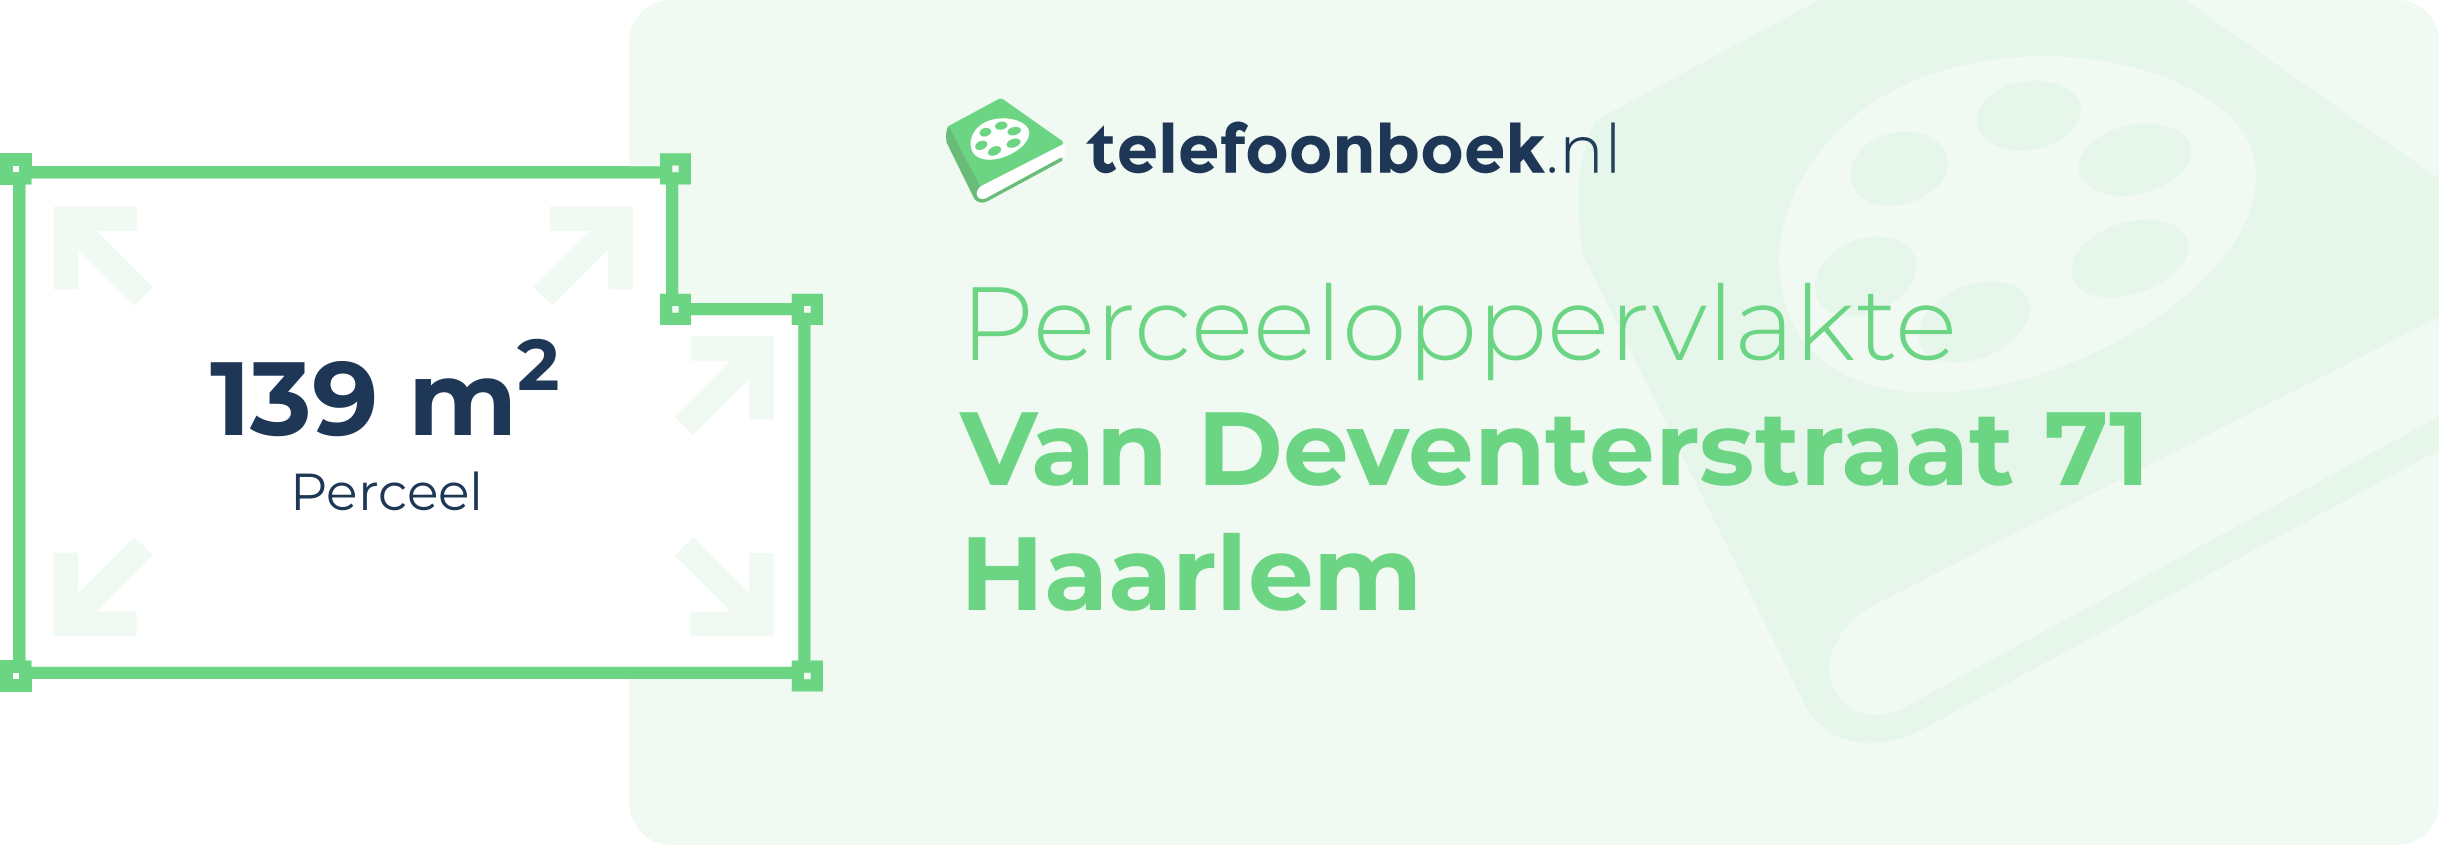 Perceeloppervlakte Van Deventerstraat 71 Haarlem